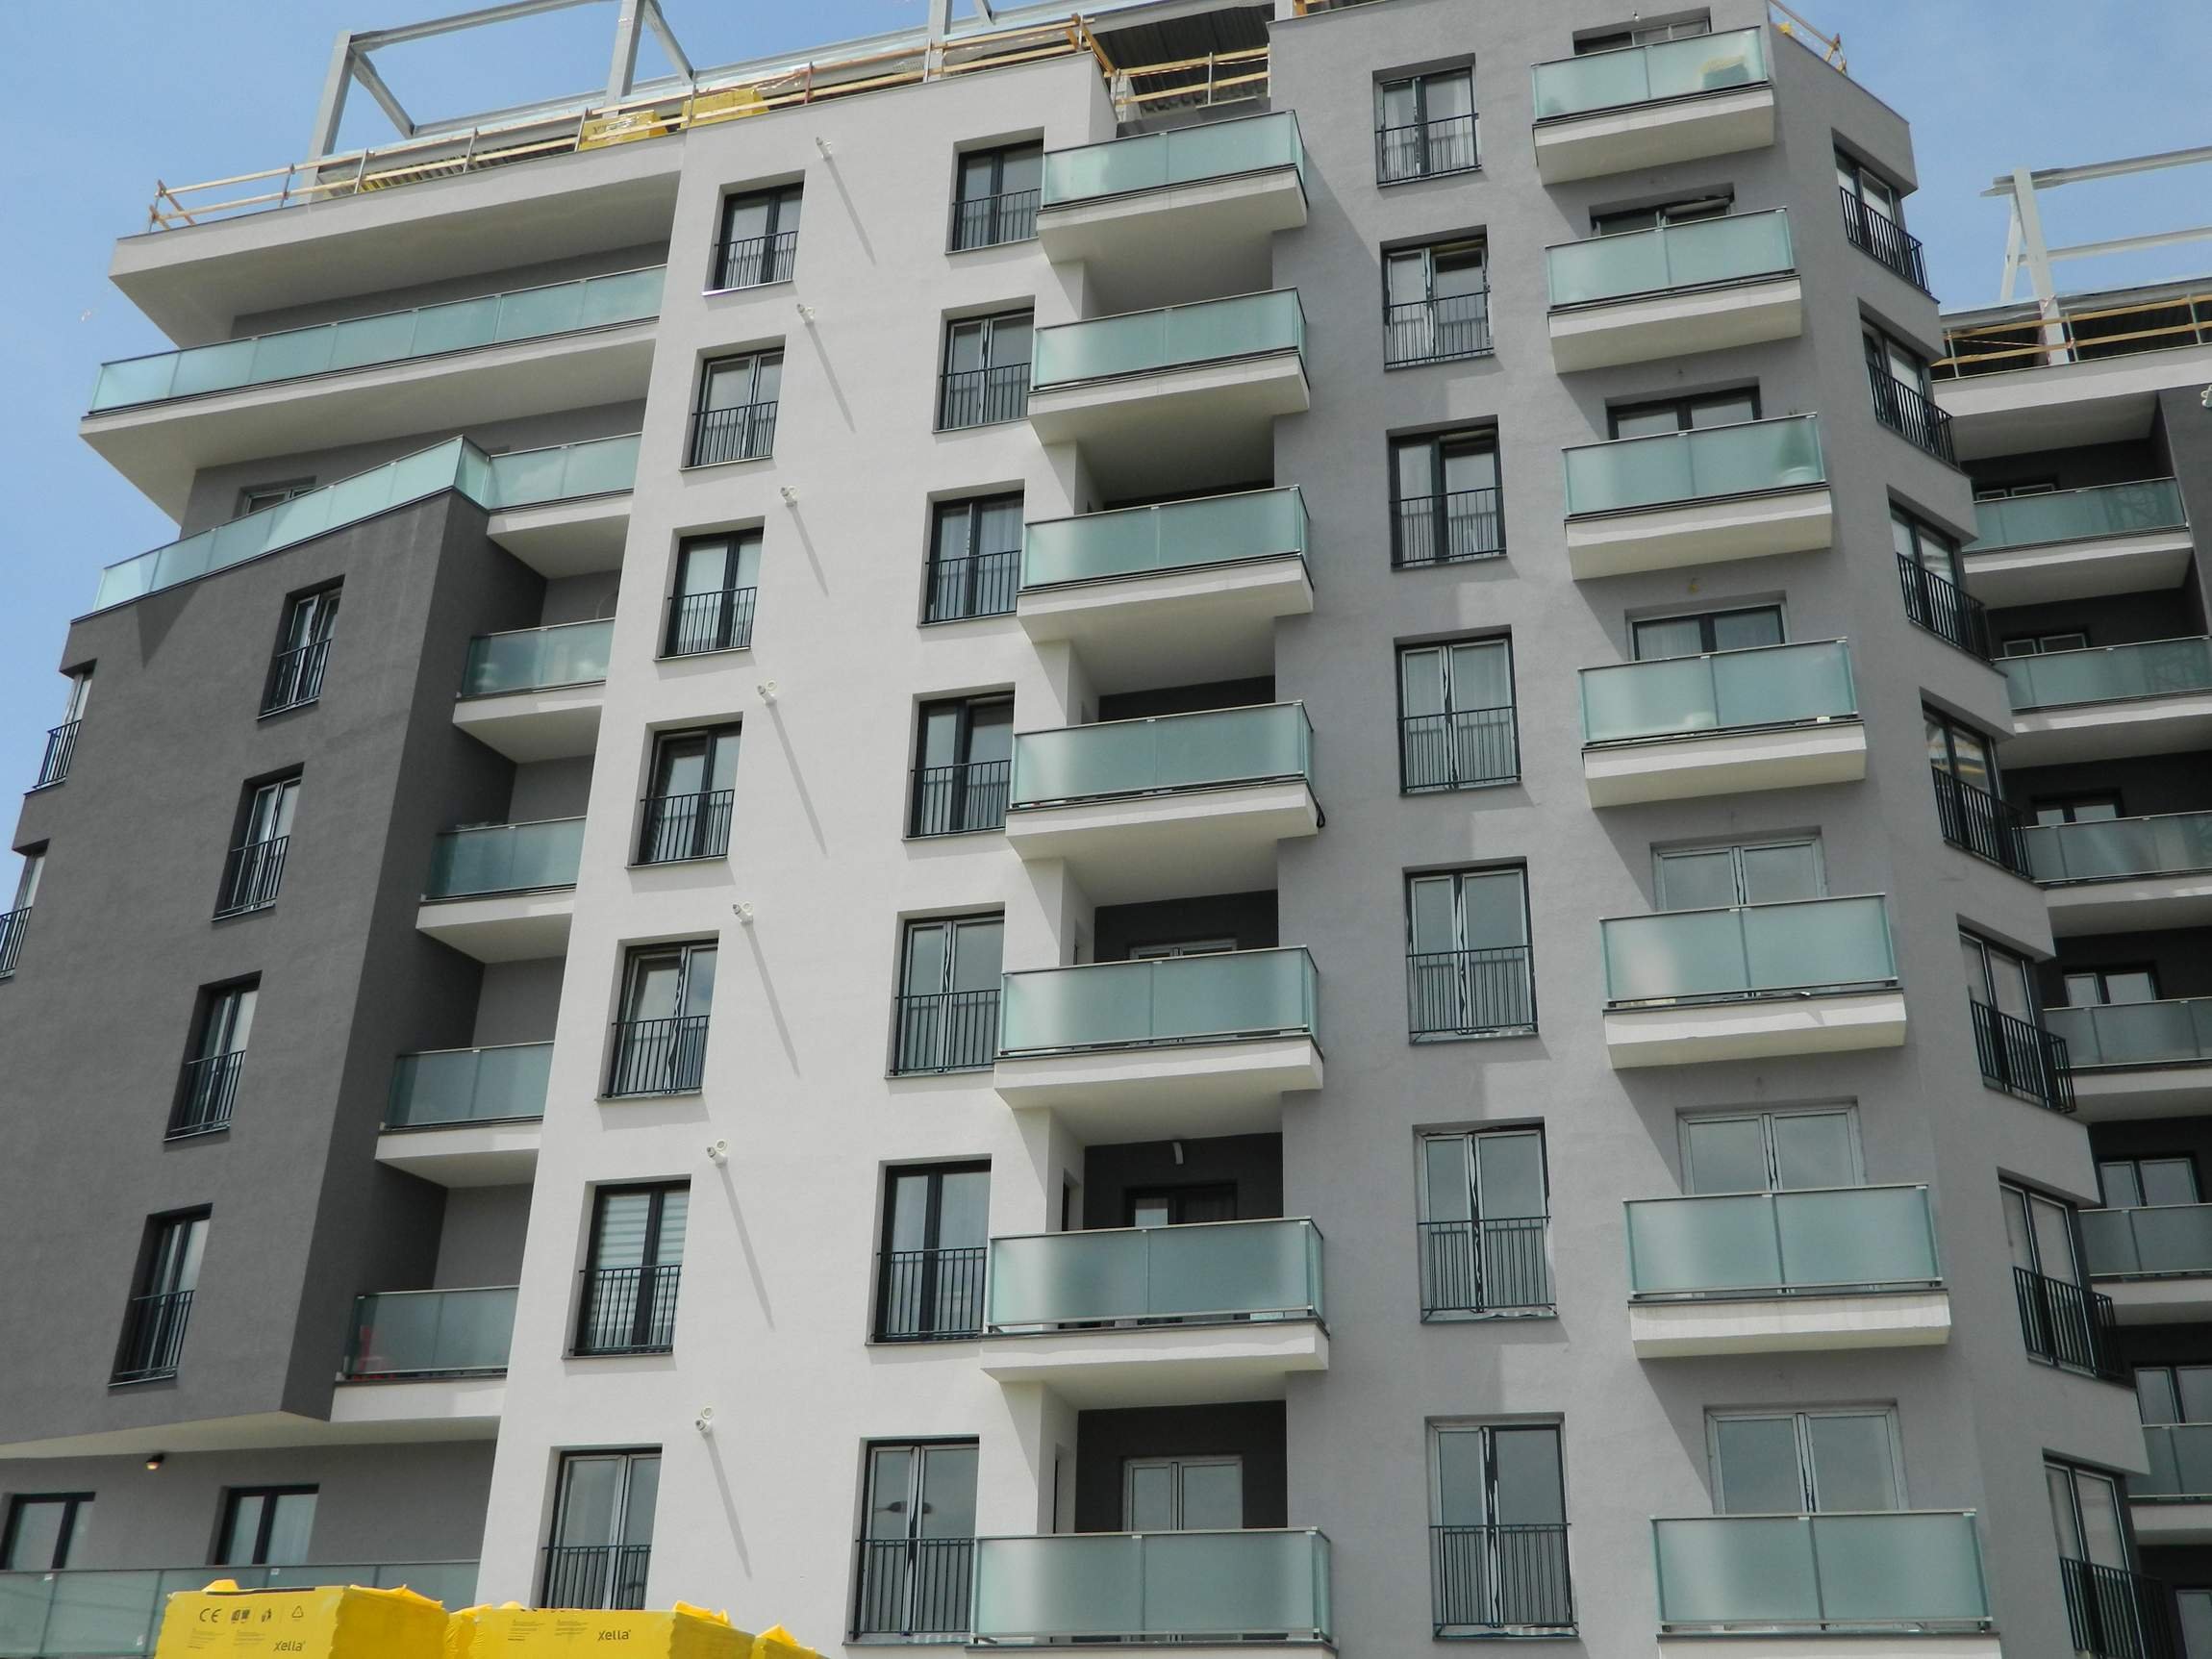  Apartamentele din Iaşi s-au scumpit cu 139 de euro pe metrul pătrat într-un an. Preţul mediu este de 1354 euro/mp